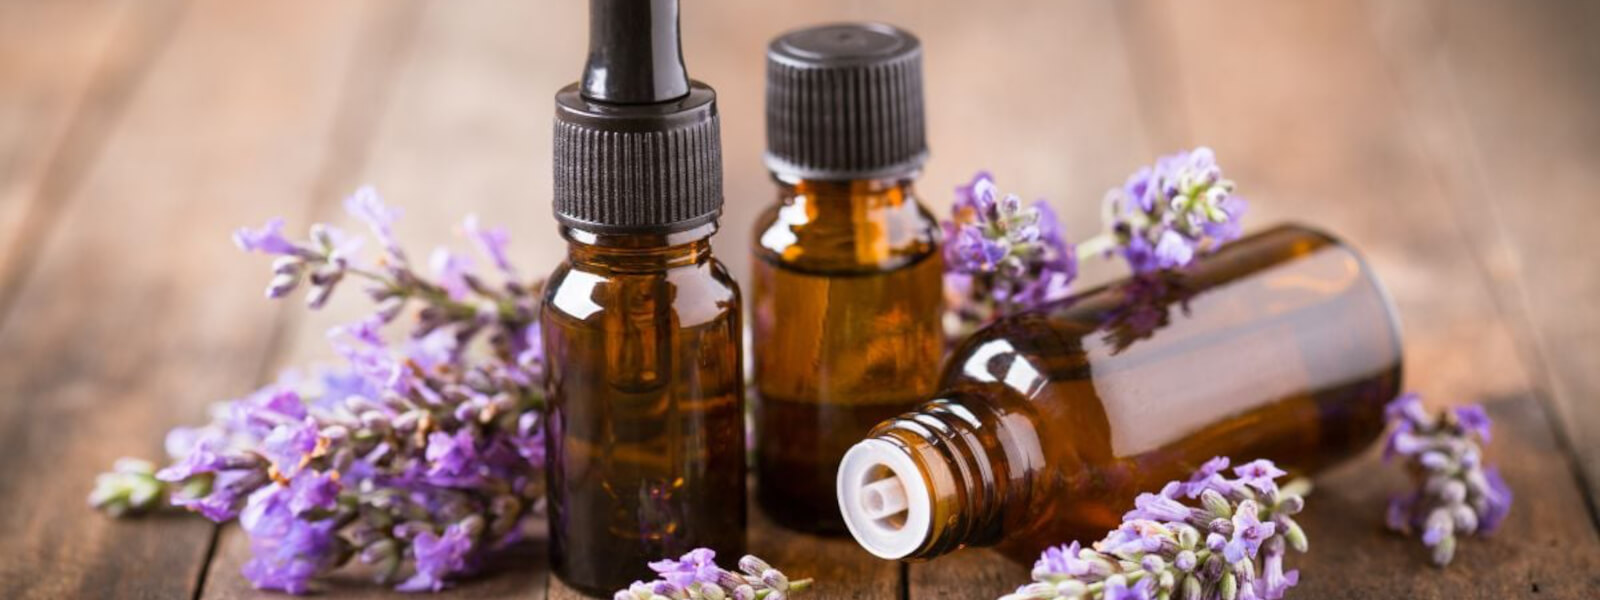 Aromaterapi er en alternativ medicinsk praksis, der bruger æteriske olier og aromaer til at fremme fysisk og følelsesmæssig velvære